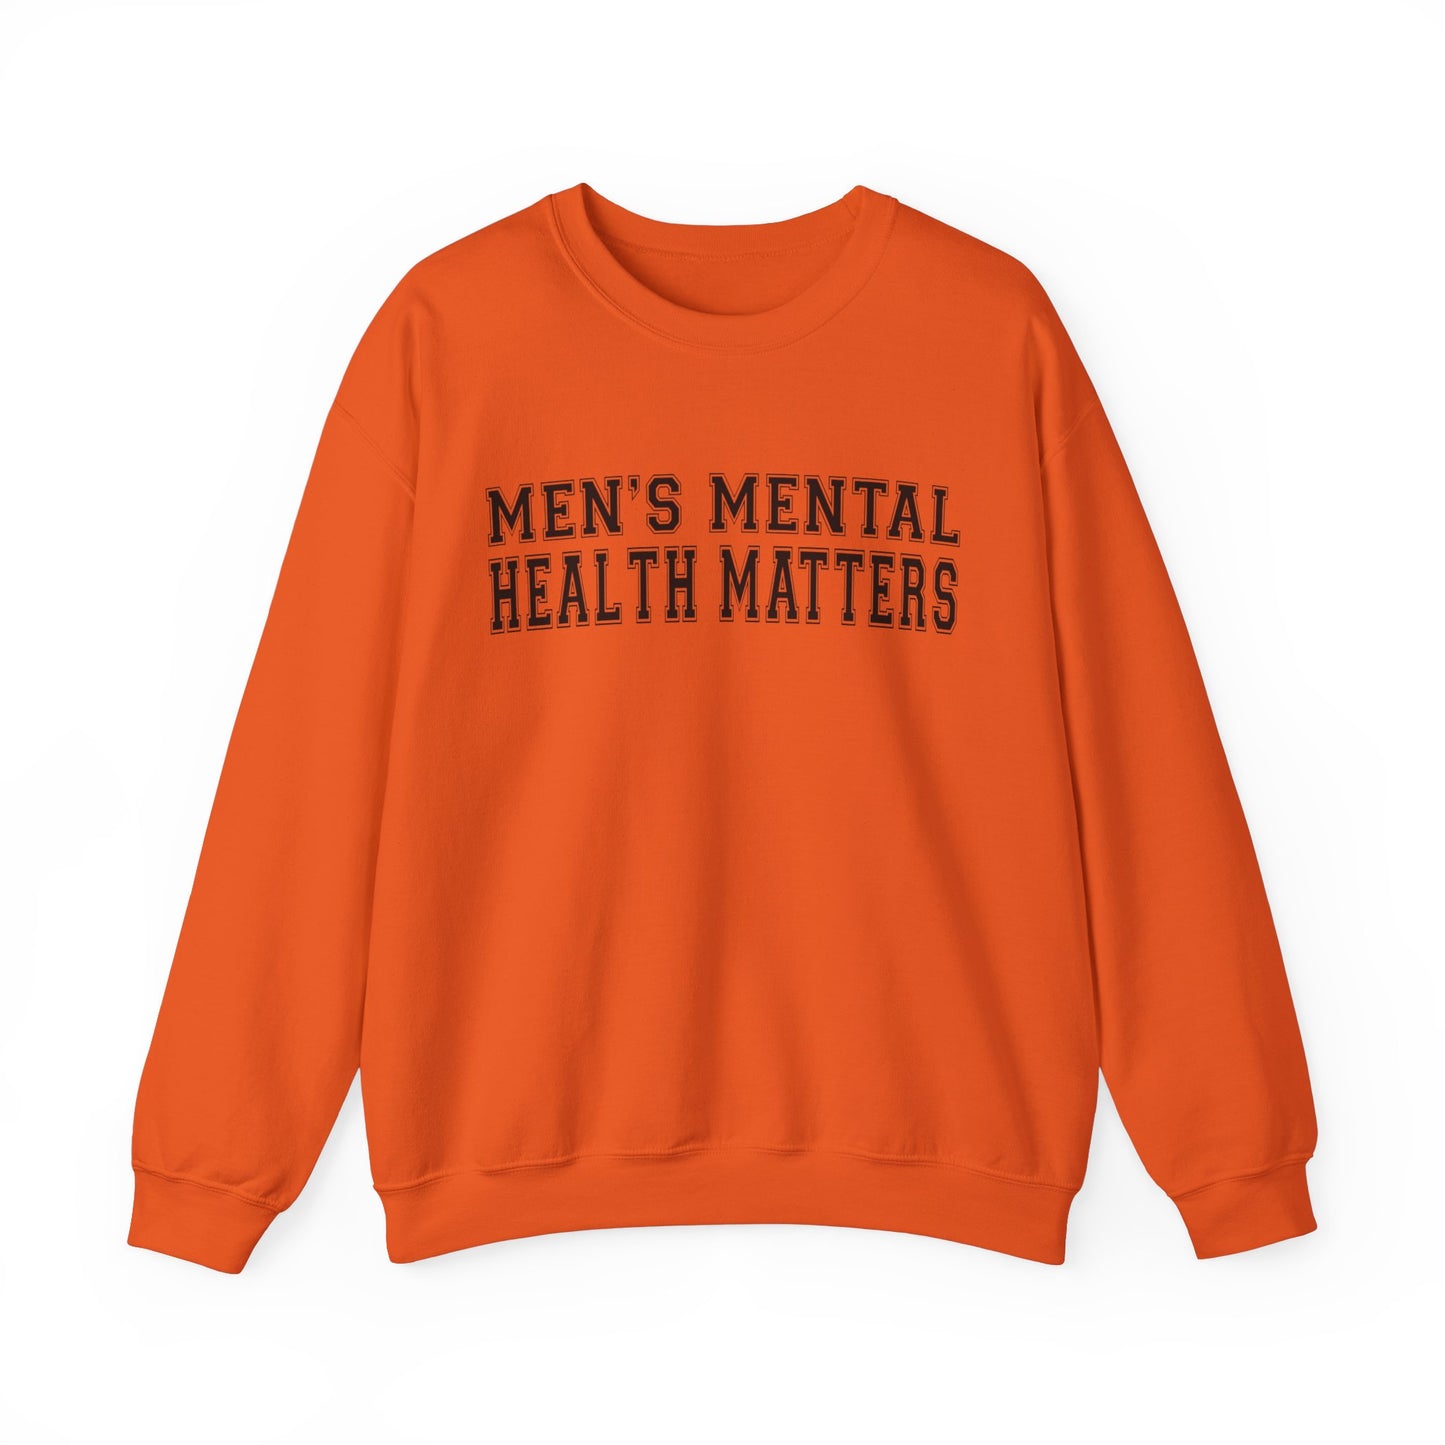 Men's Mental Health Matters Sweatshirt